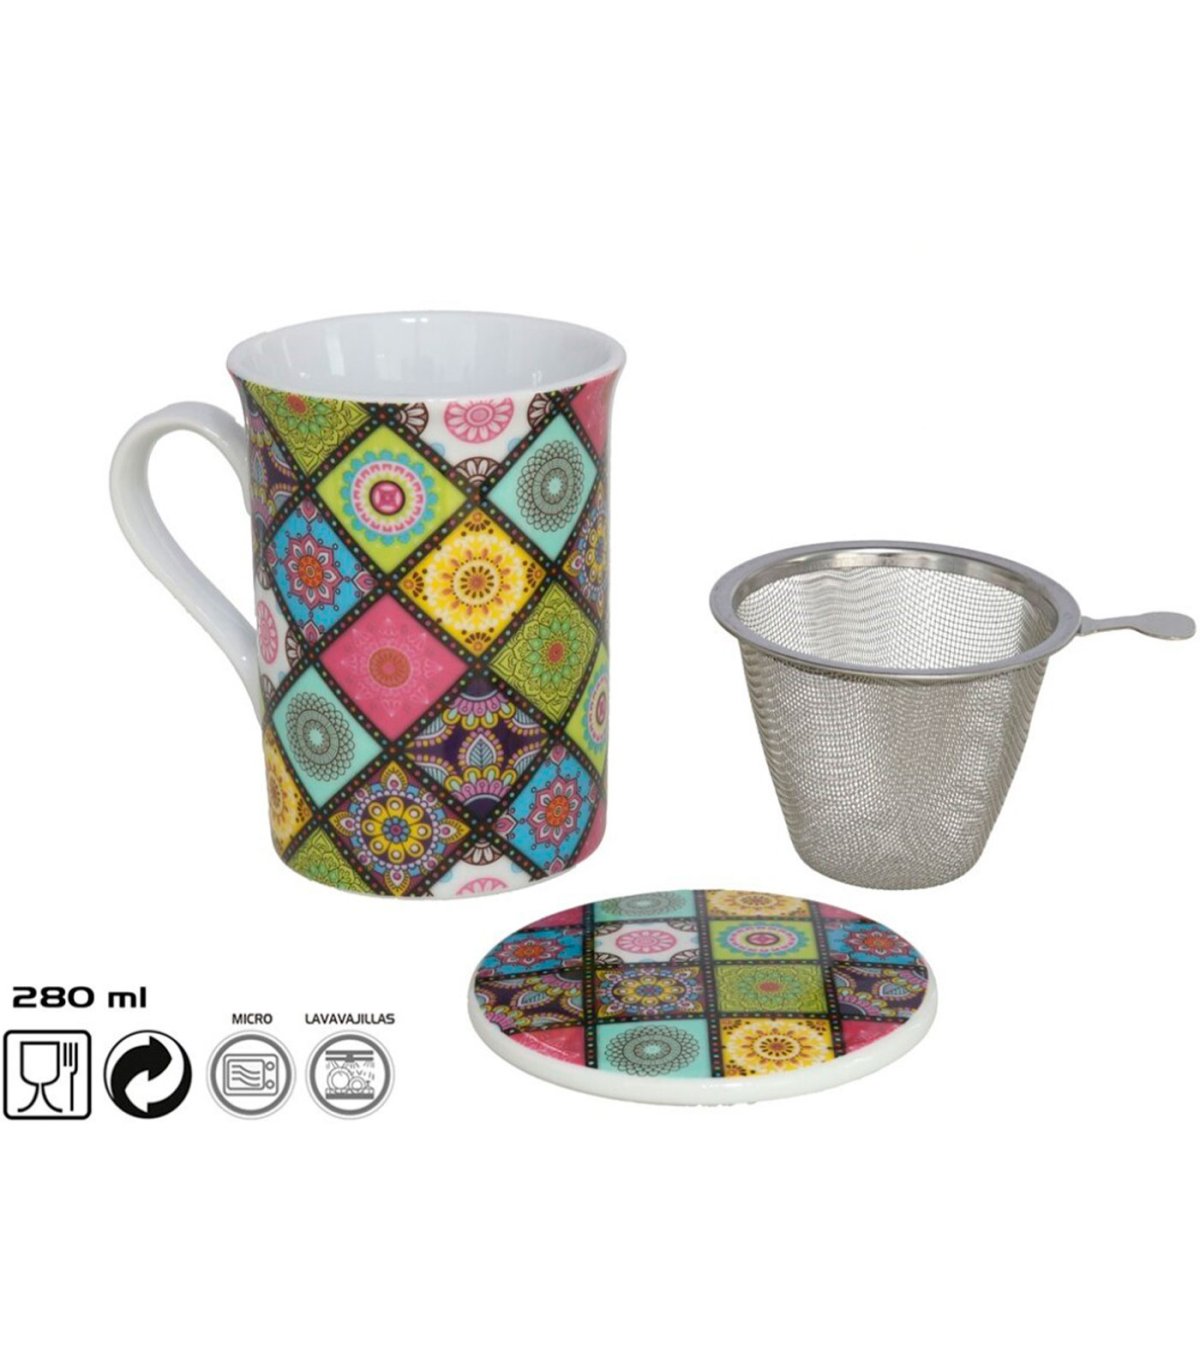 Tradineur - Taza de porcelana para infusiones, mug café, té, incluye tapa y  filtro de acero inoxidable, mantiene caliente la inf